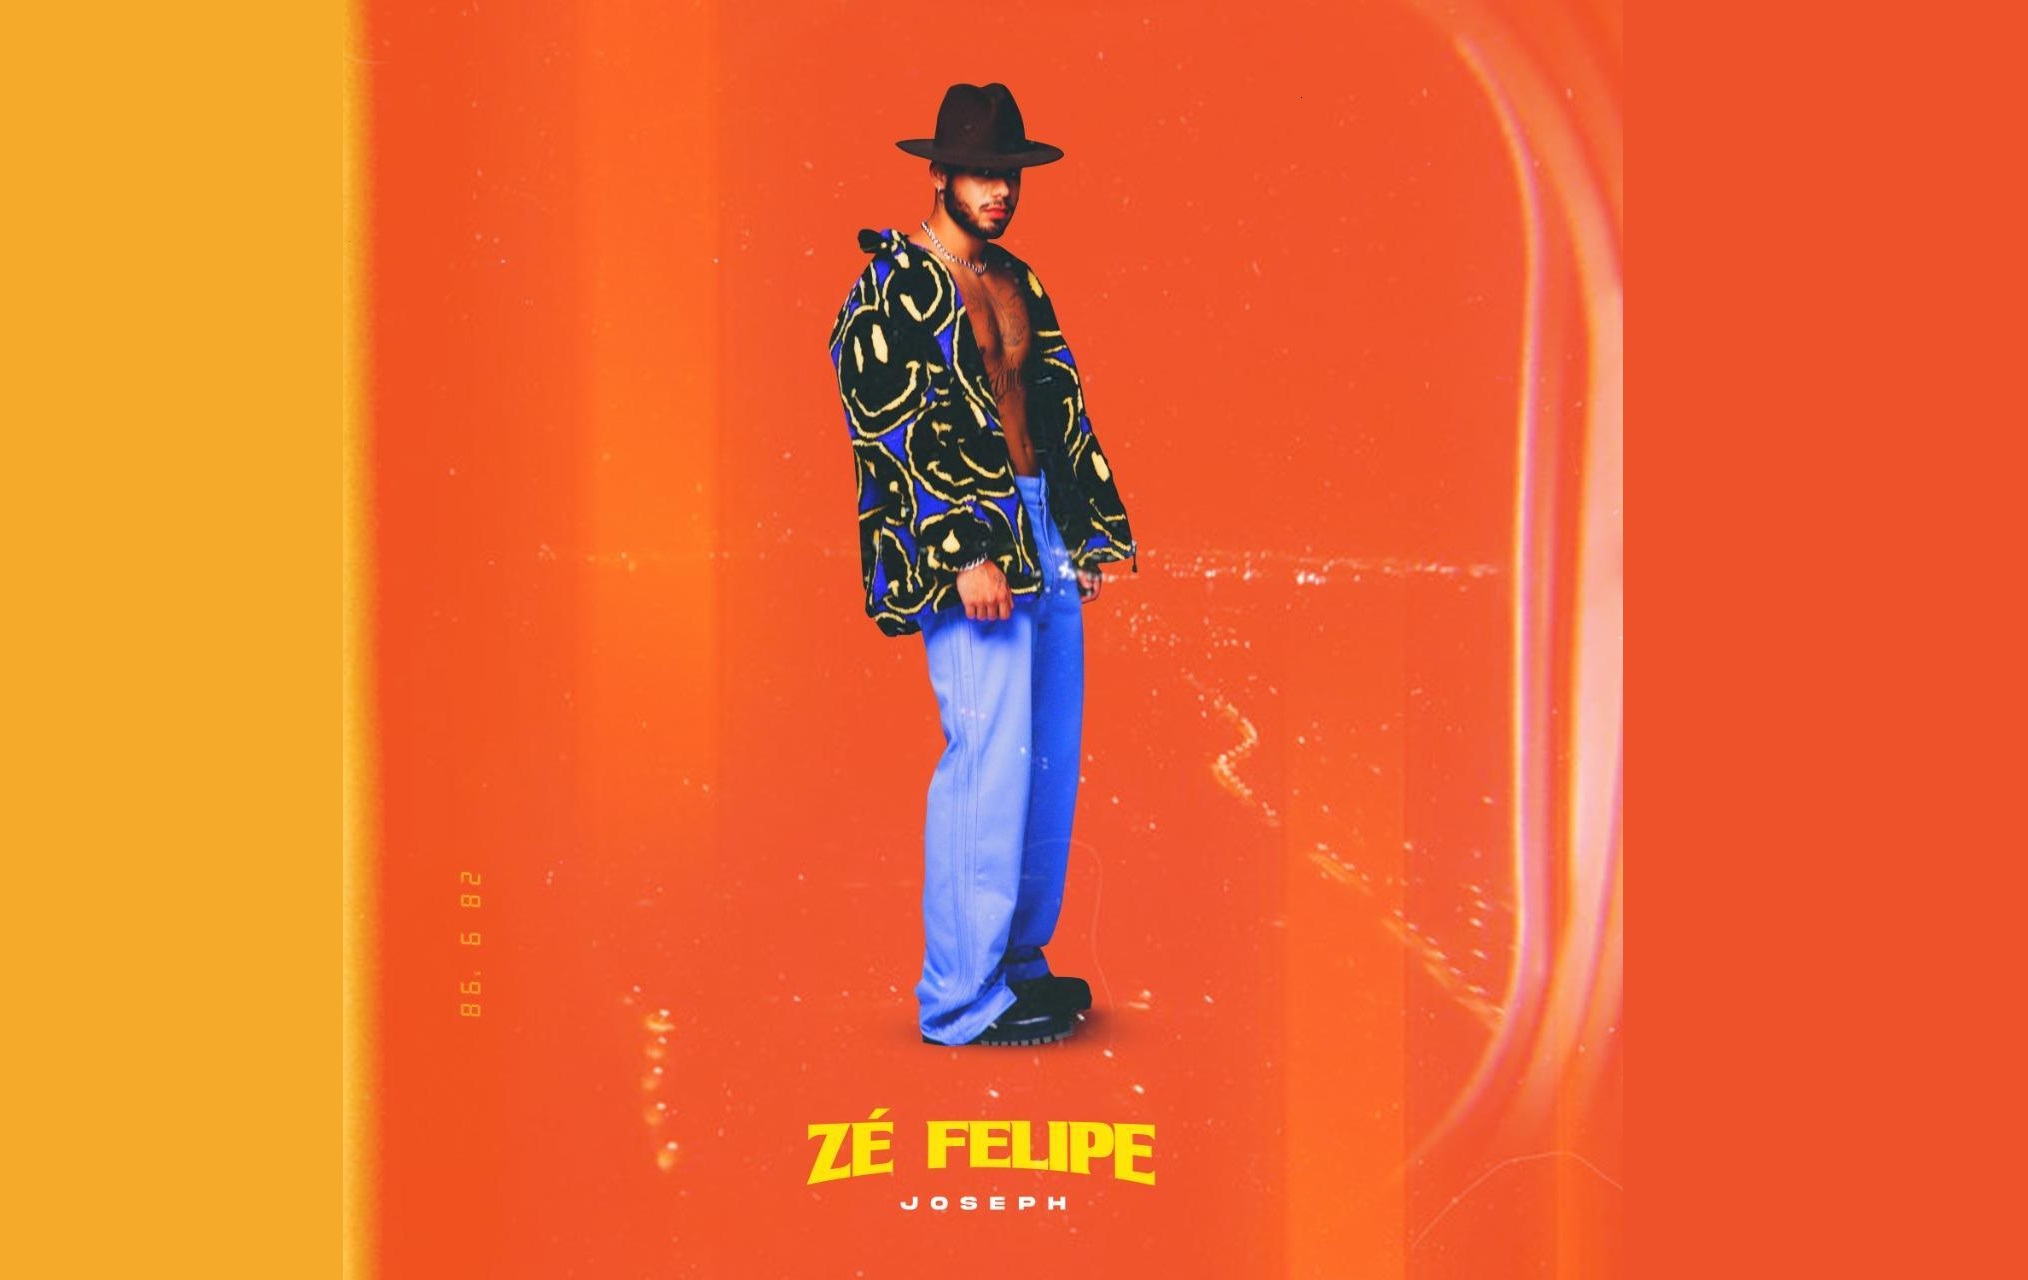 Zé Felipe lança EP "Joseph" e clipe de 'Toma Toma, Vapo Vapo' com MC Danny e participação de Virgínia nesta sexta (12) 41